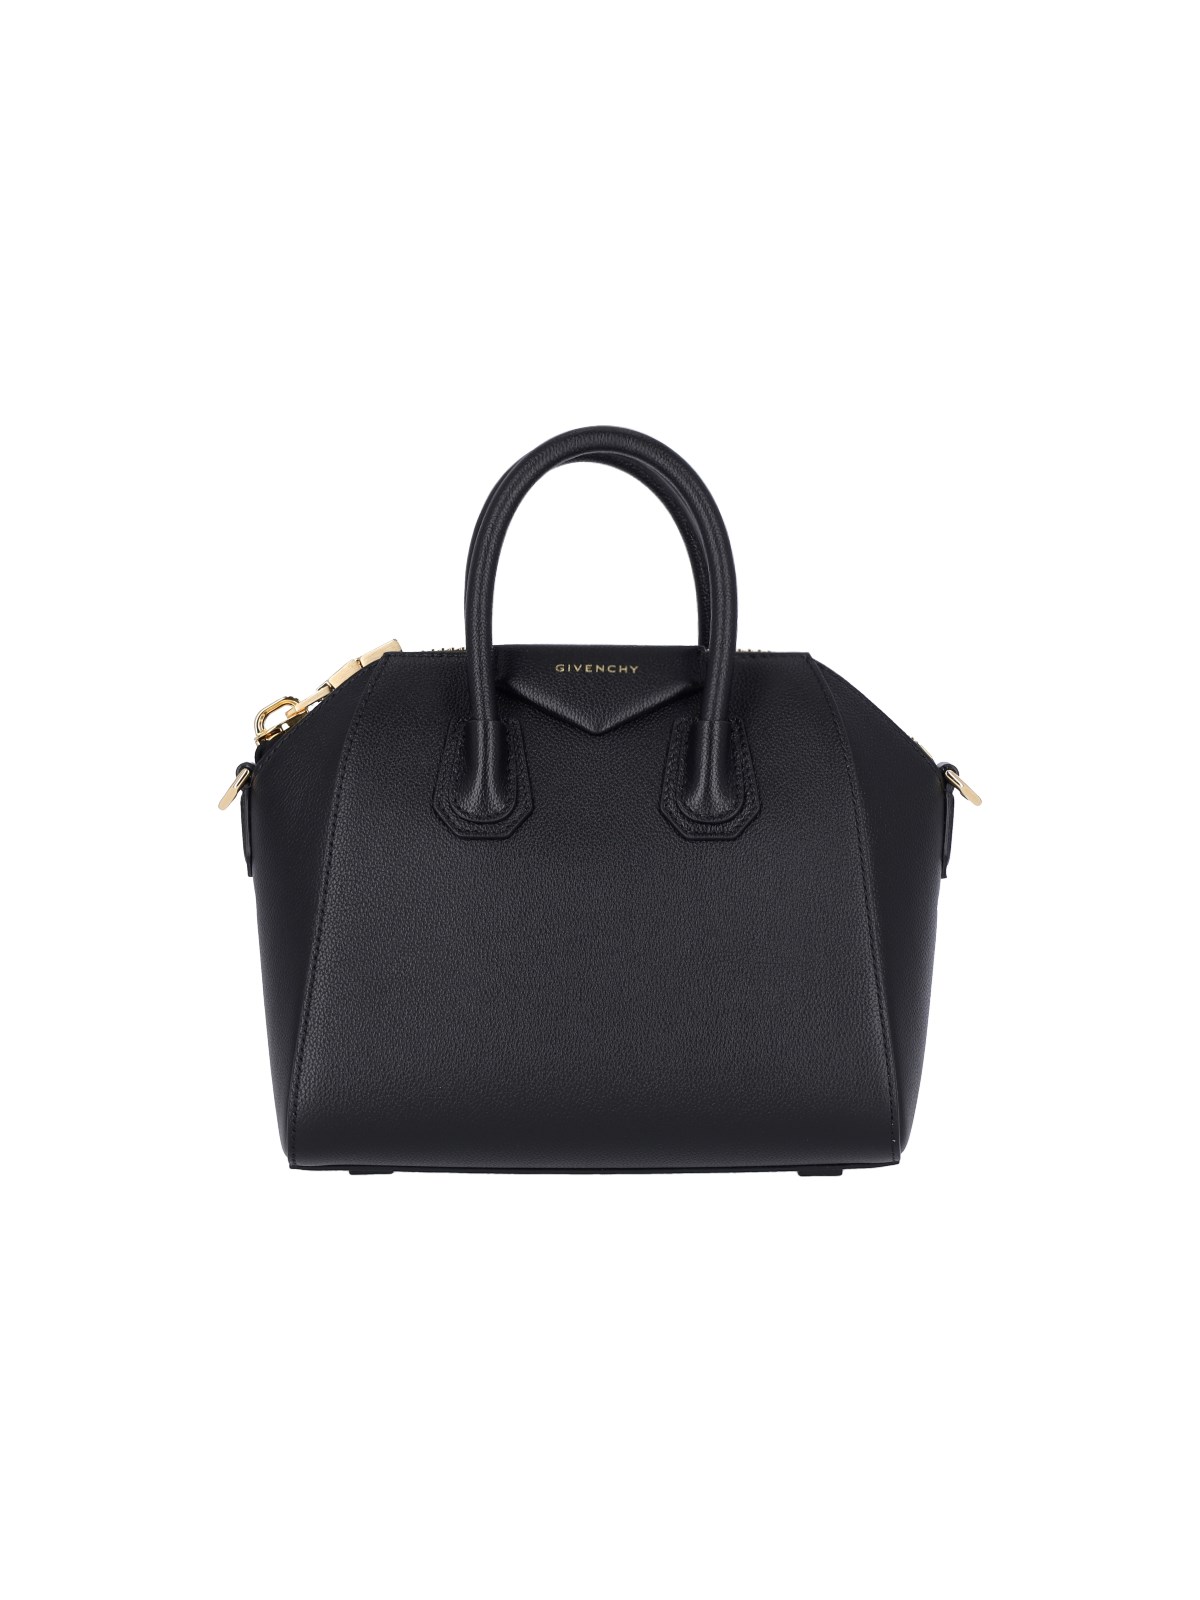 Givenchy Antigona Leather Mini Bag In Black  